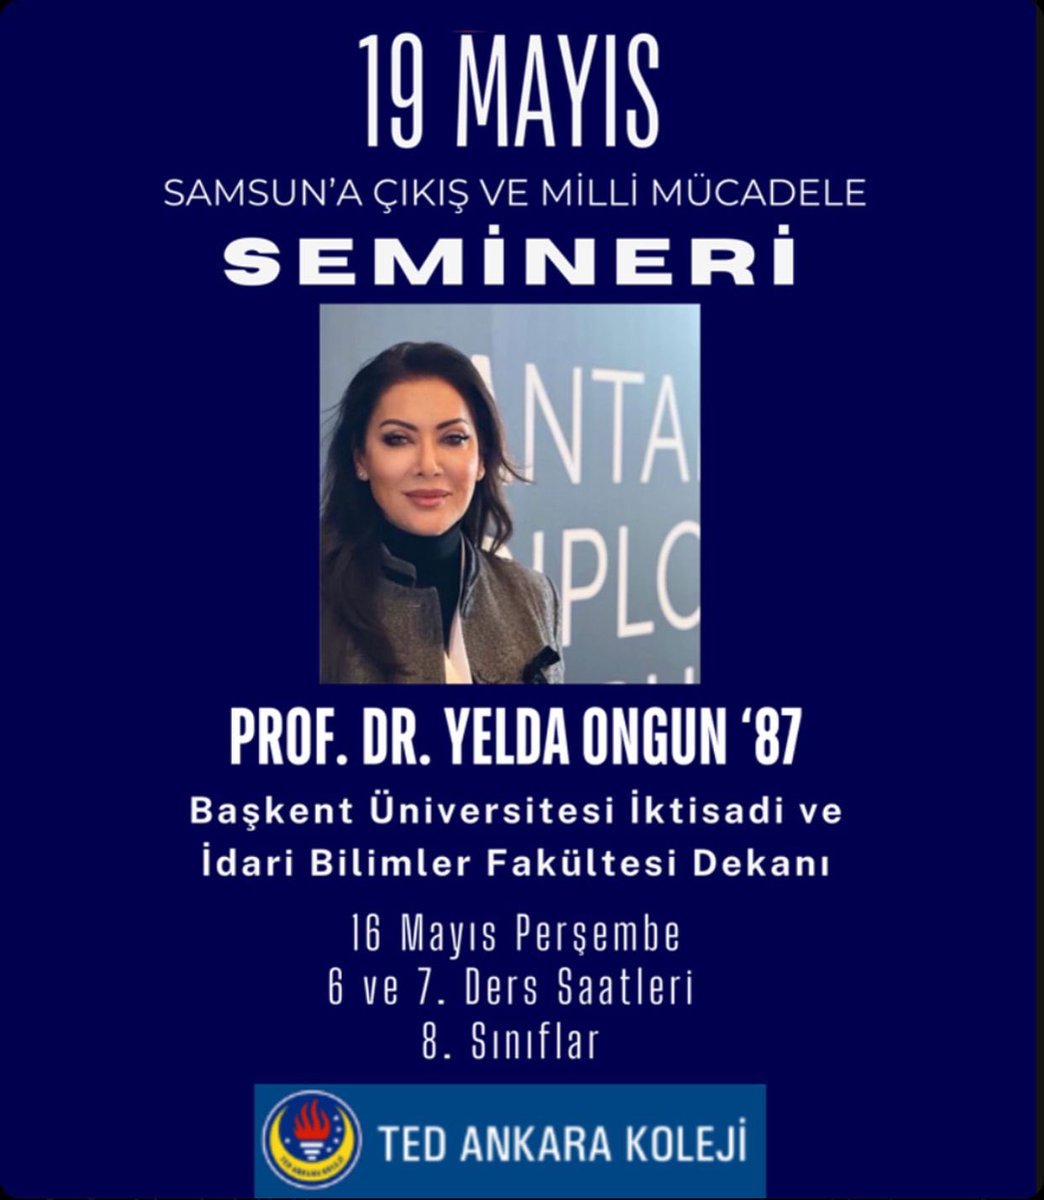 Mezun olduğum Ankara Koleji’nde seminer vermek, öğrencilerle buluşmak ne büyük sevinç @TEDAnkara @TEDAnkaraMD